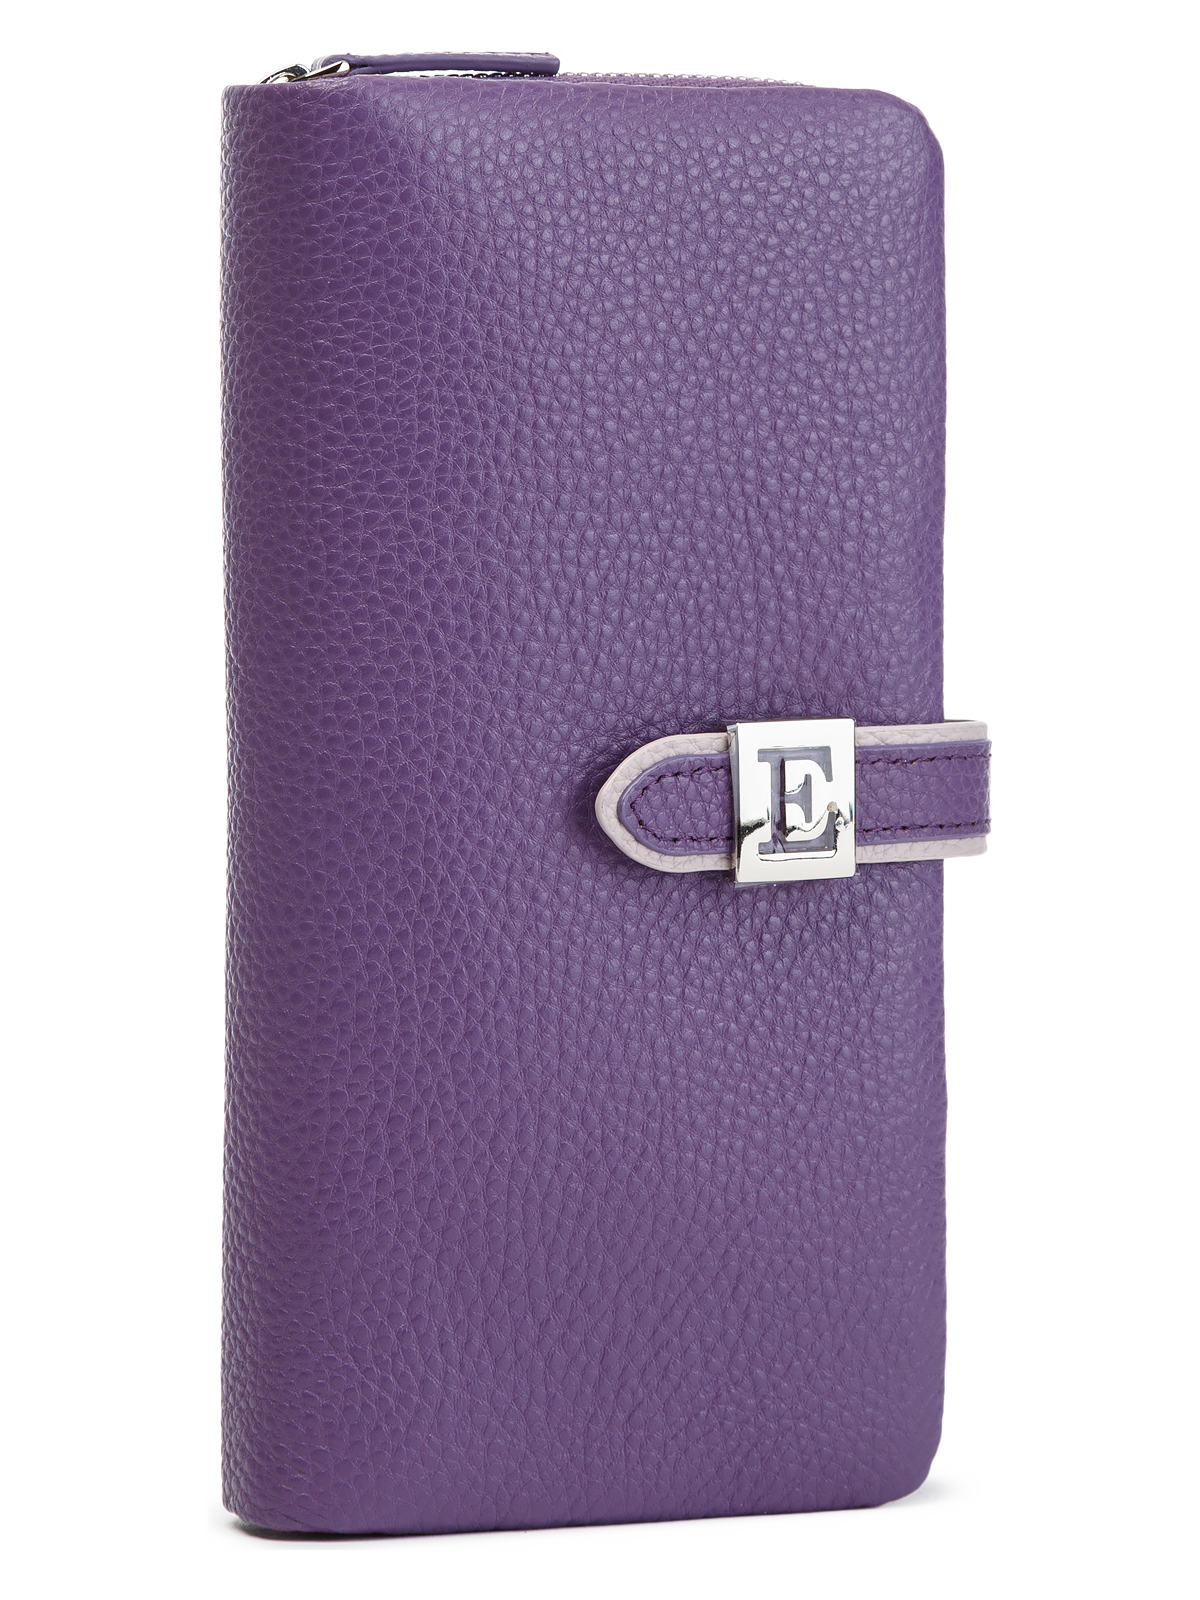 Кошелек женский Eleganzza Z144-2804 светло-фиолетовый